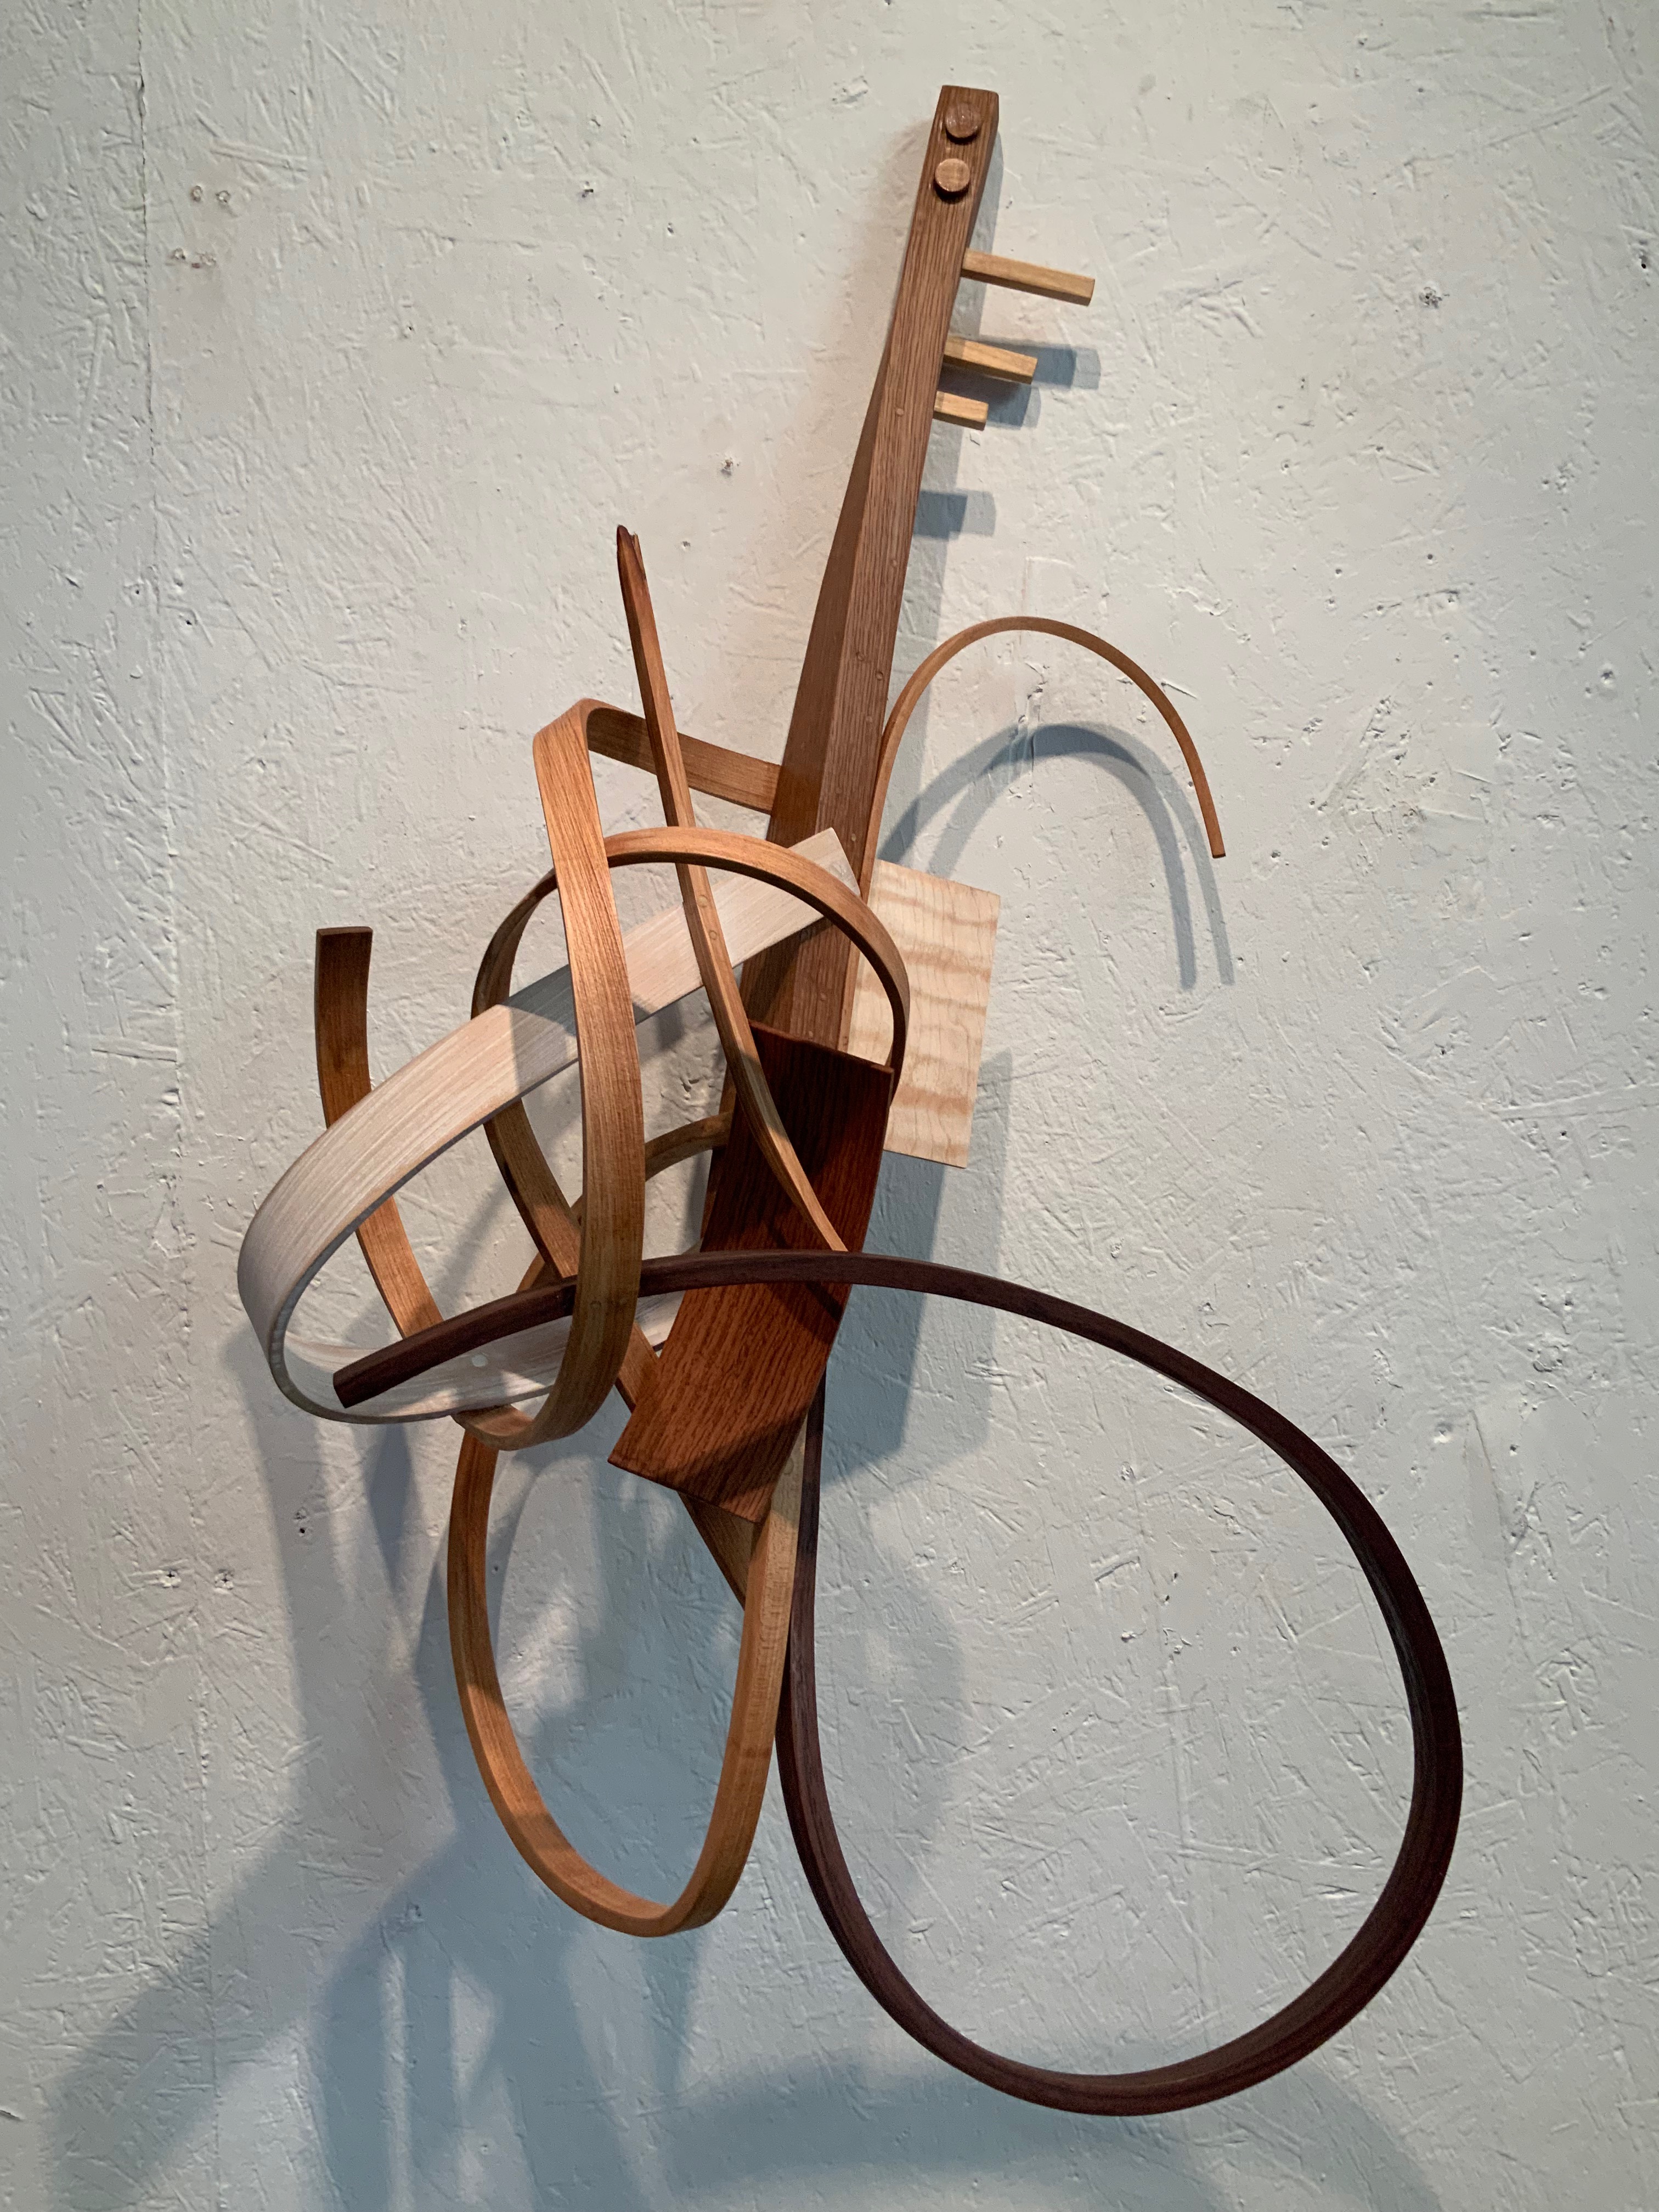 Rick Maxwell bent wood sculpture